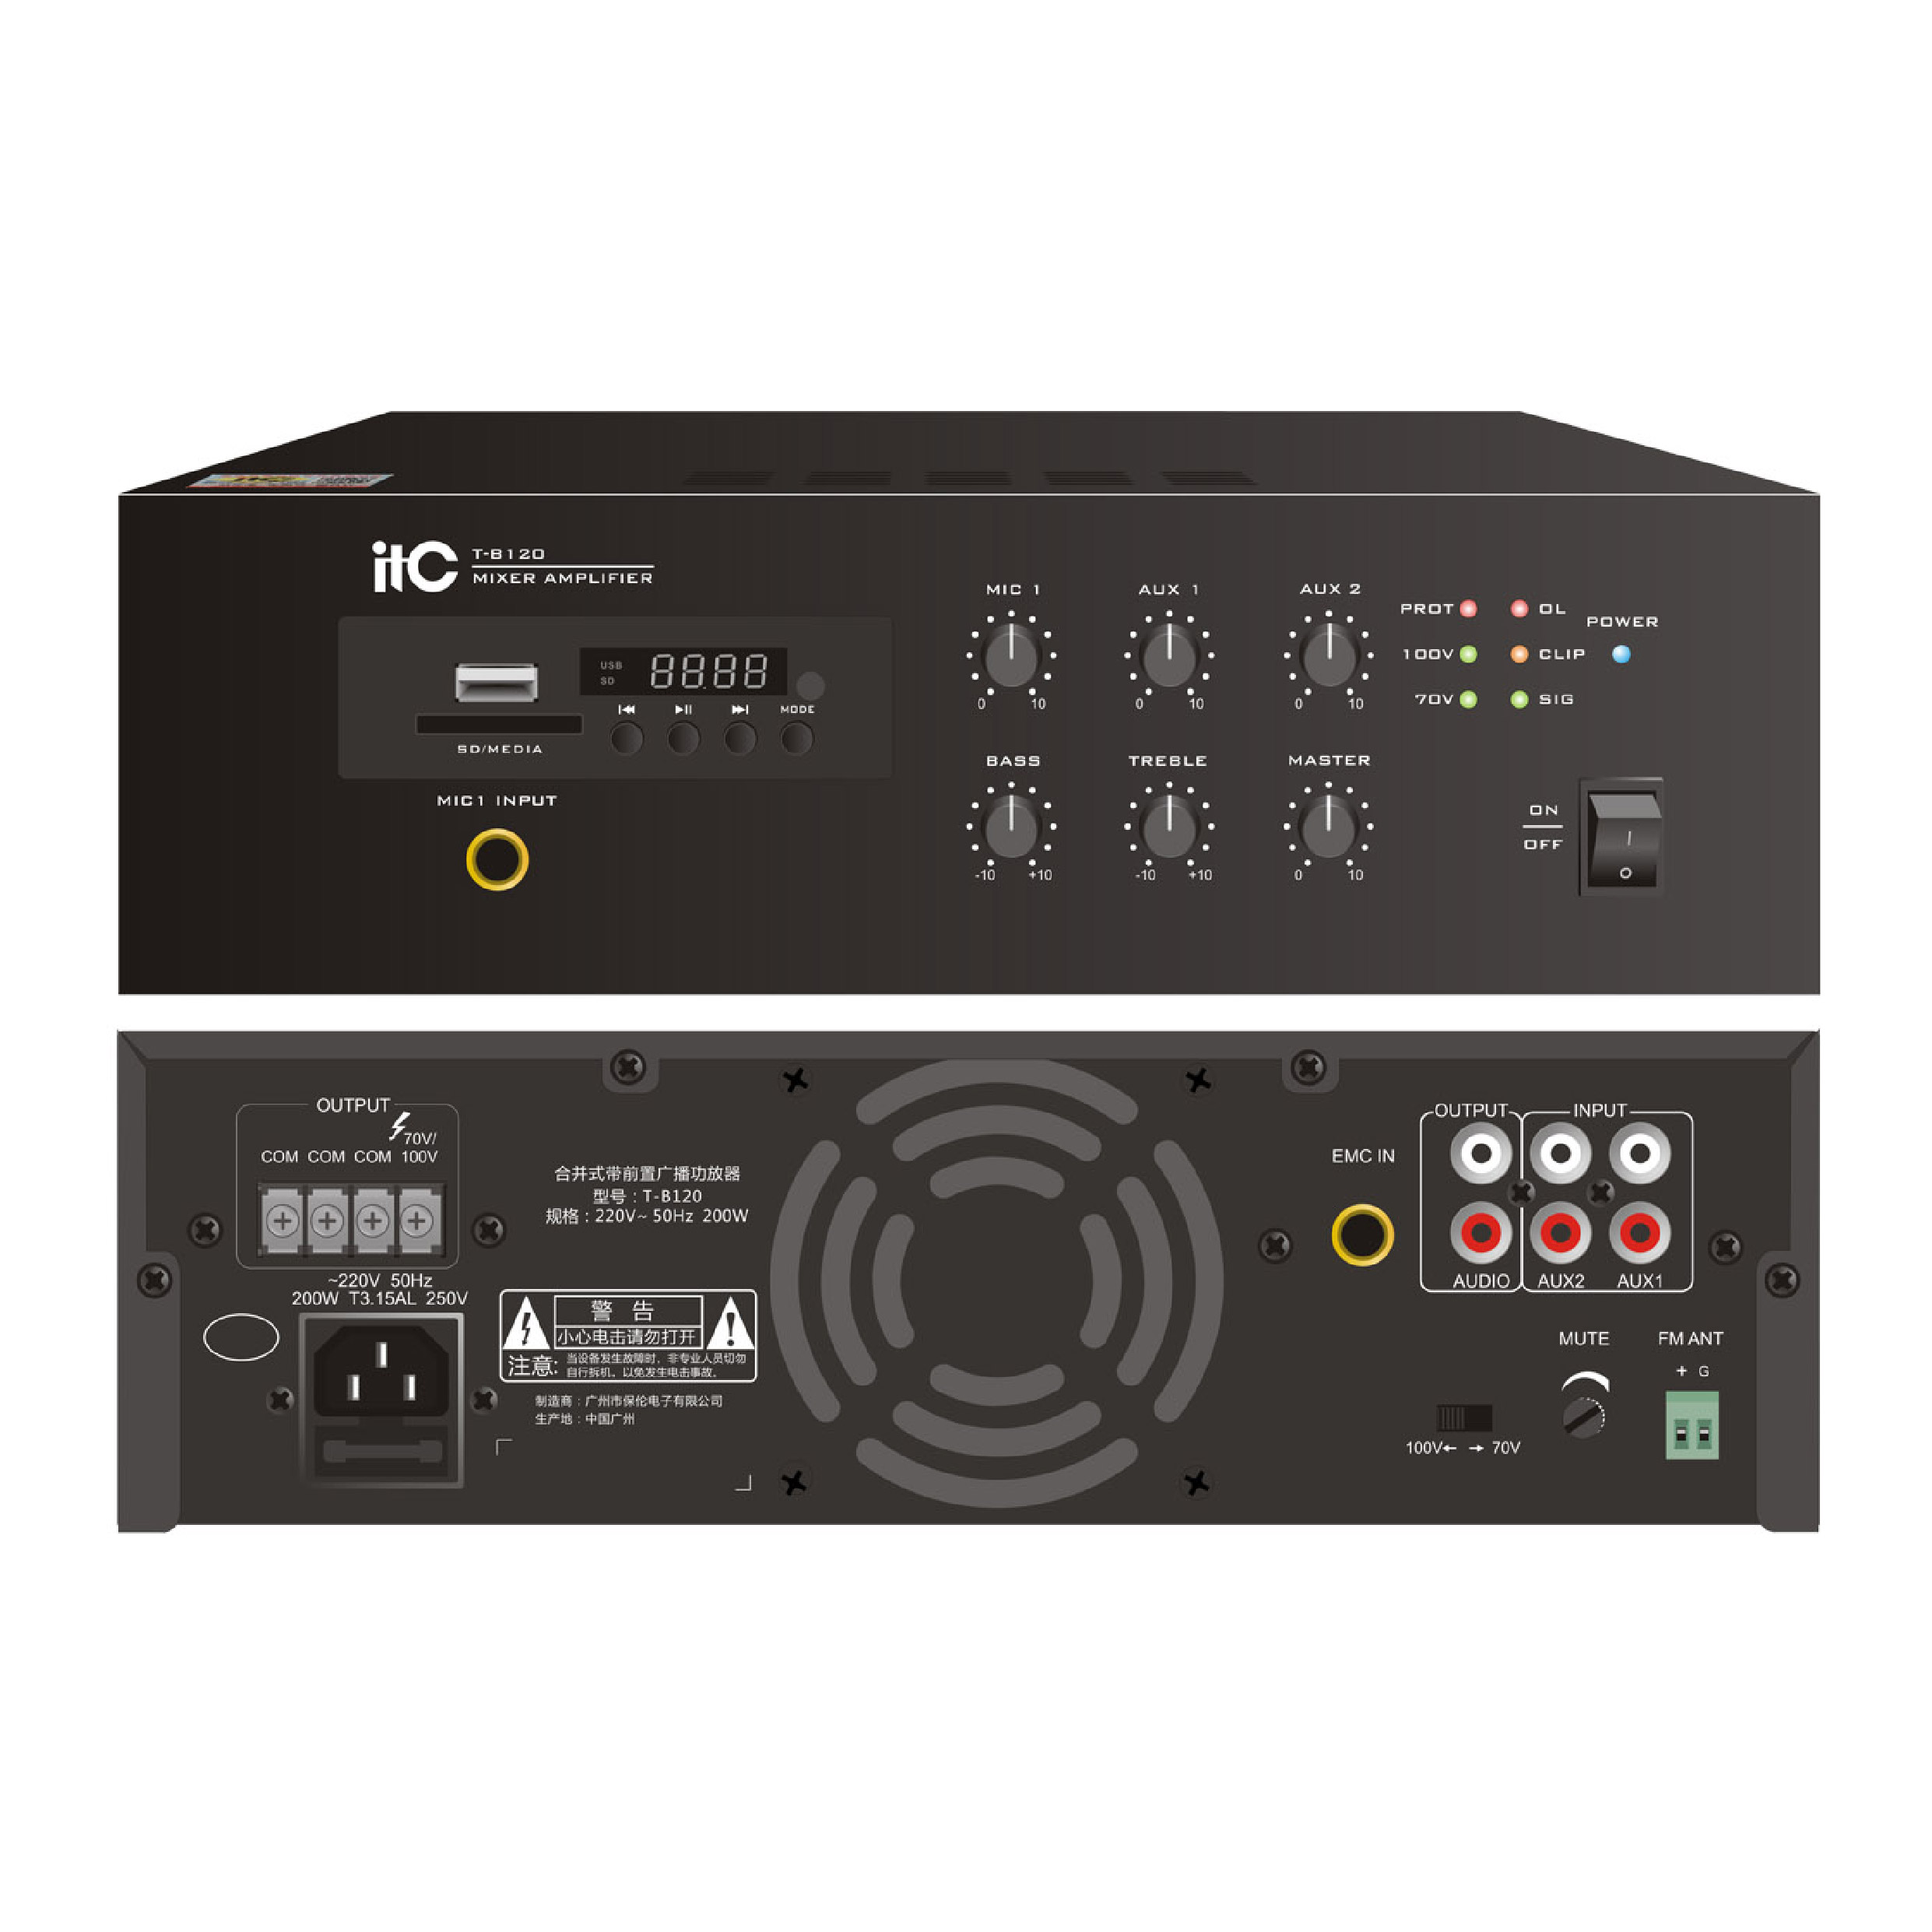 ITC T-B240 Mini Amplifier